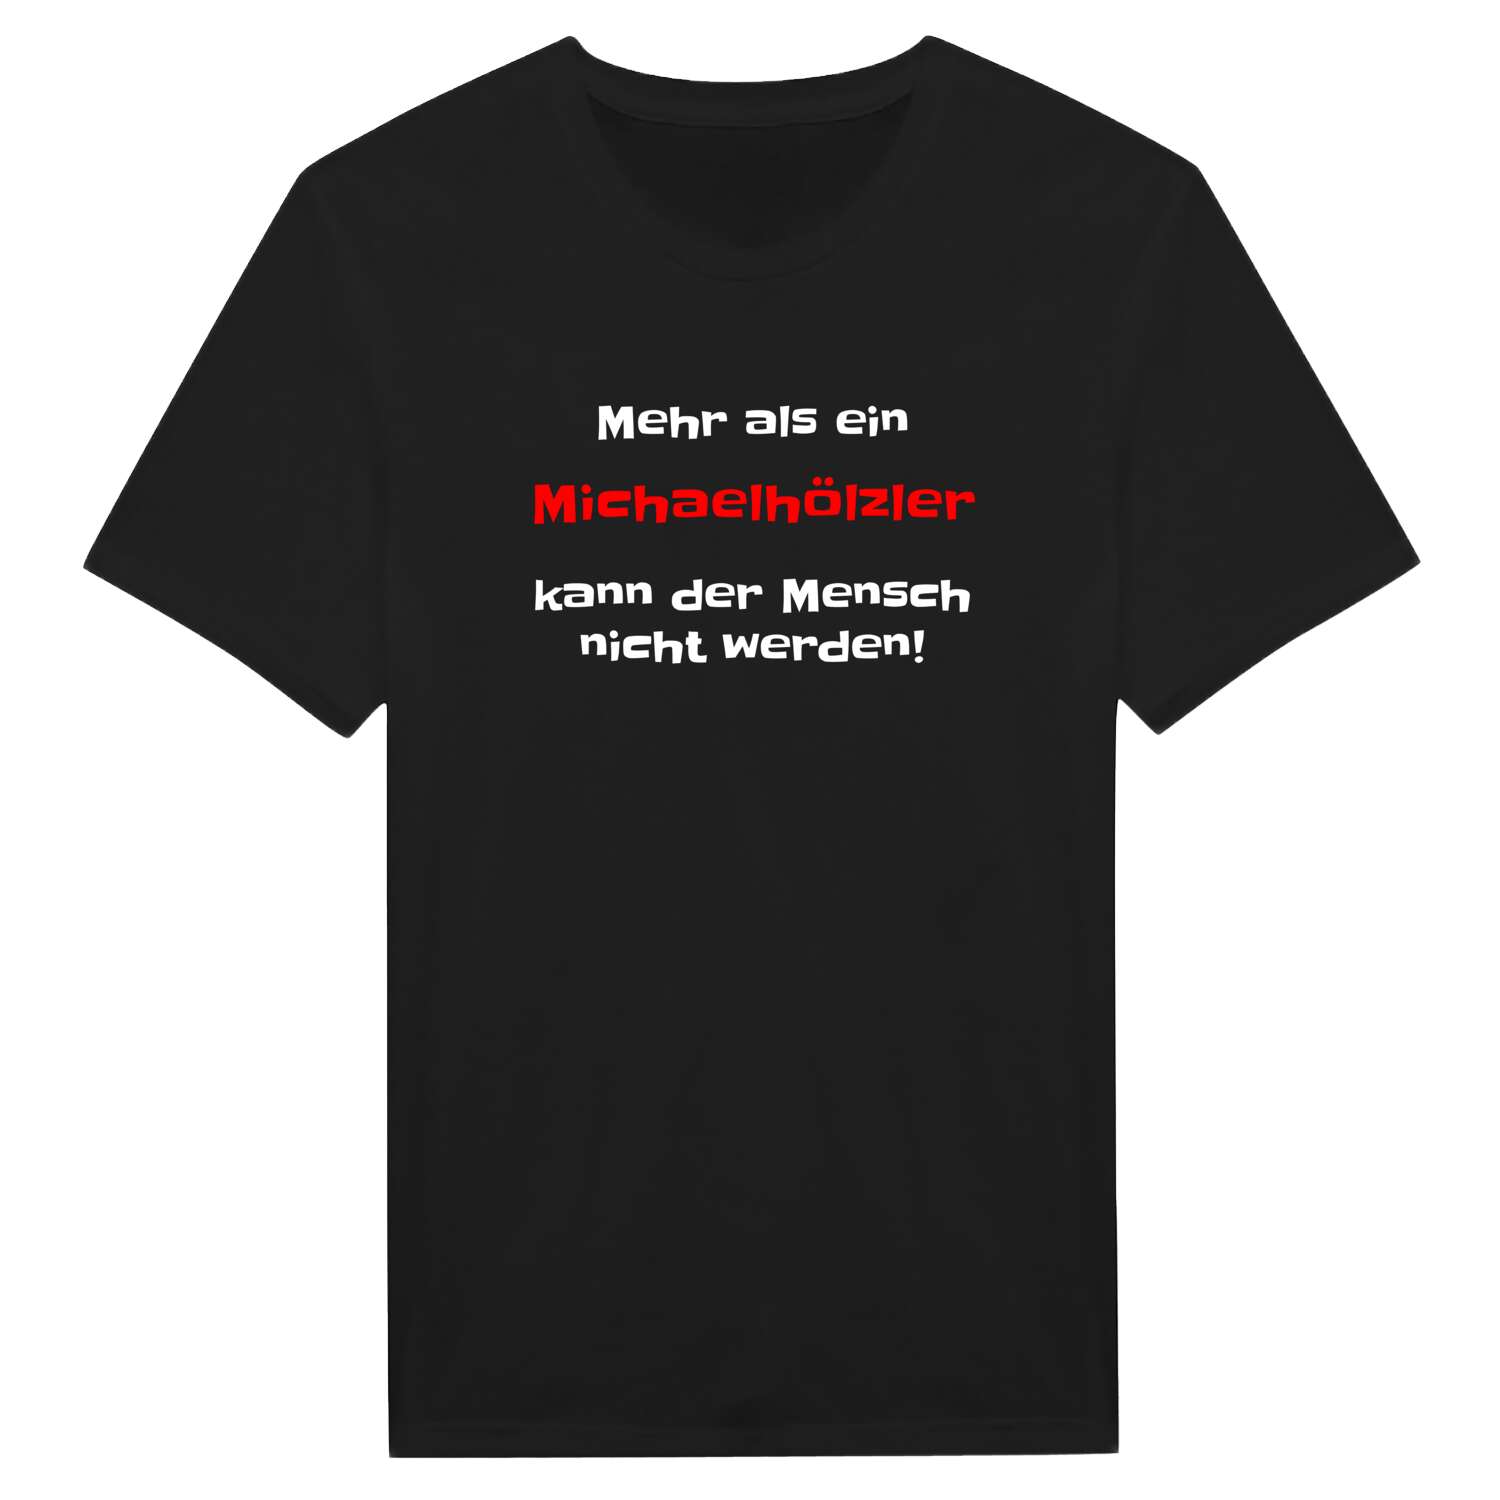 Michaelhölzl T-Shirt »Mehr als ein«